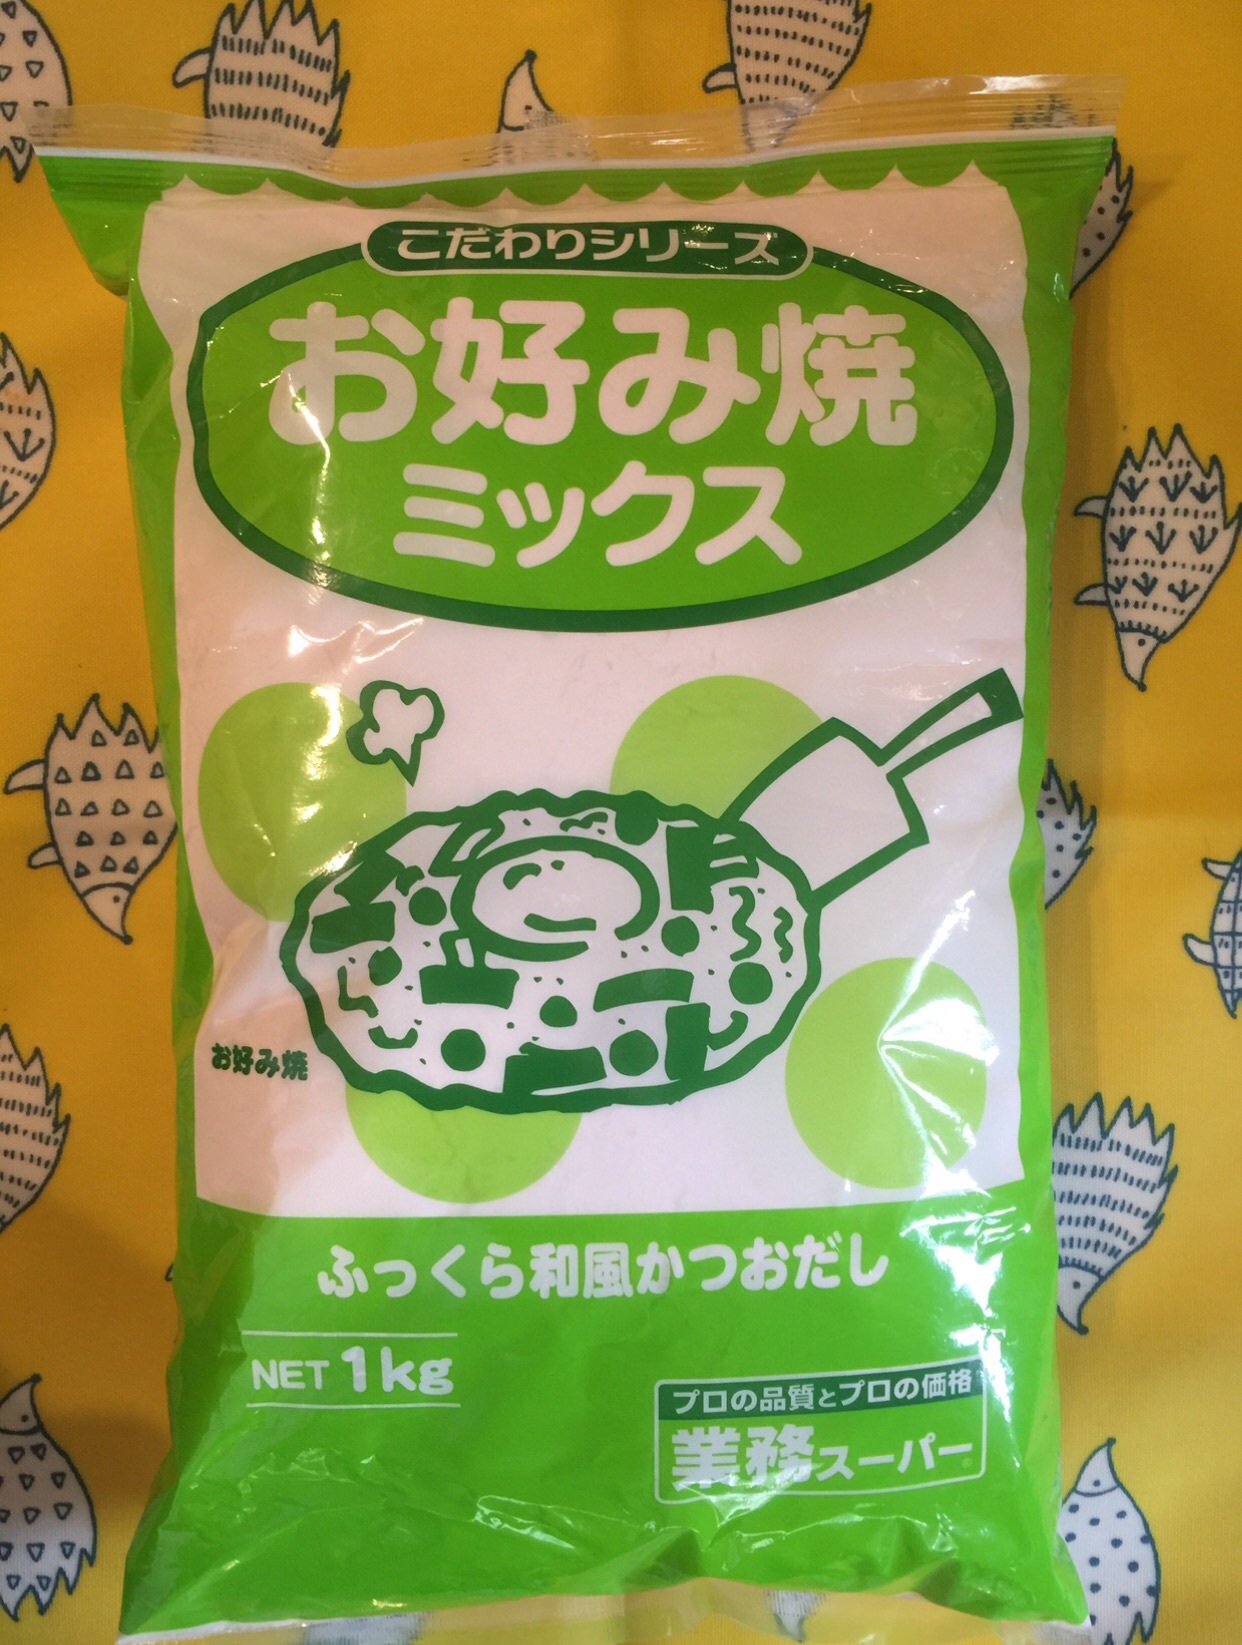 業務スーパー お好み焼きミックス 1kg 神戸物産 業務スーパーの商品をレポートするブログ